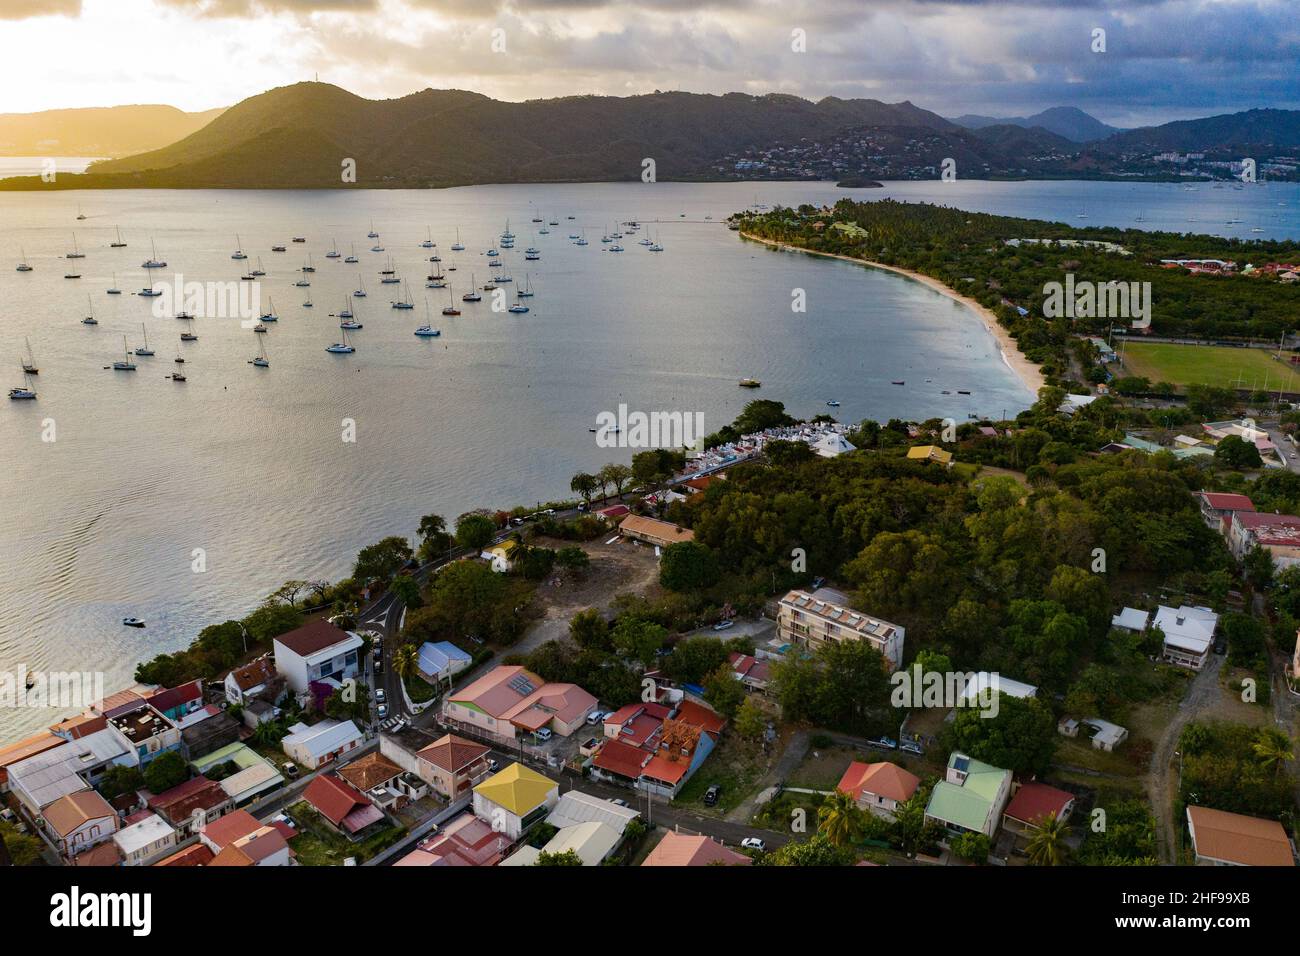 Sainte-Anne est la commune la plus au sud de la Martinique. Elle surplombe la magnifique baie qui est un grand nom de bareaux Banque D'Images